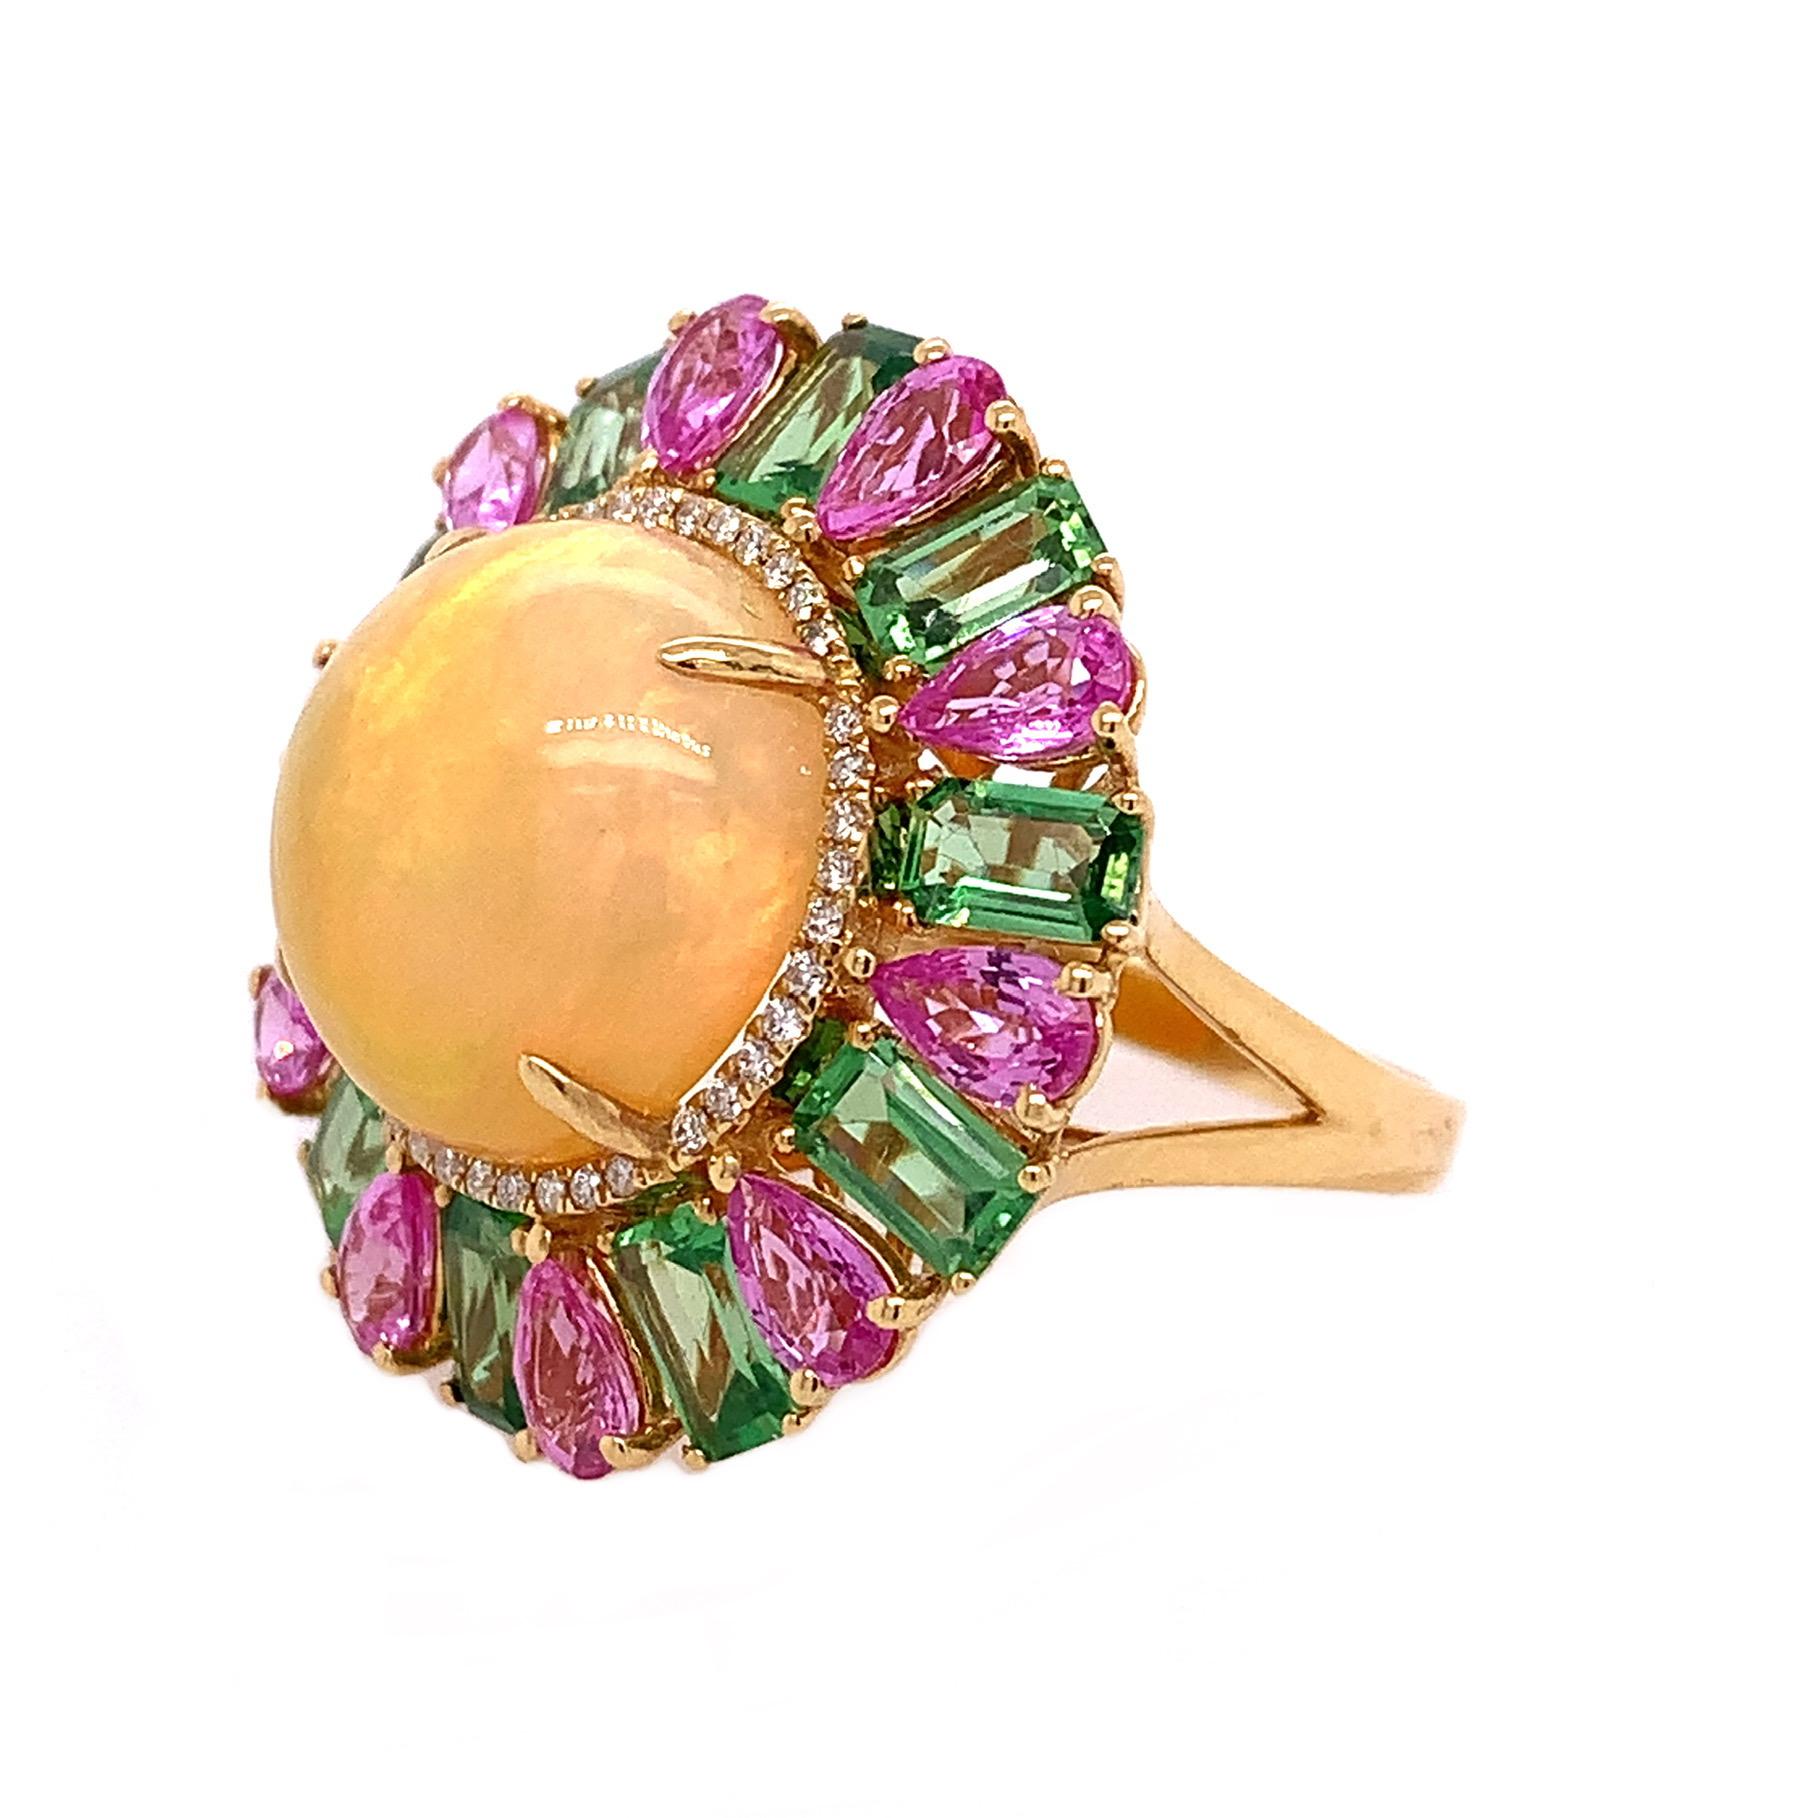 18K Yellow Gold
Ring Size 7
Ethiopian Opal: 6.93 Carats
Tourmaline: 3.23 Carats
Pink Sapphire: 2.55 Carats
Diamonds: 0.14 Carats